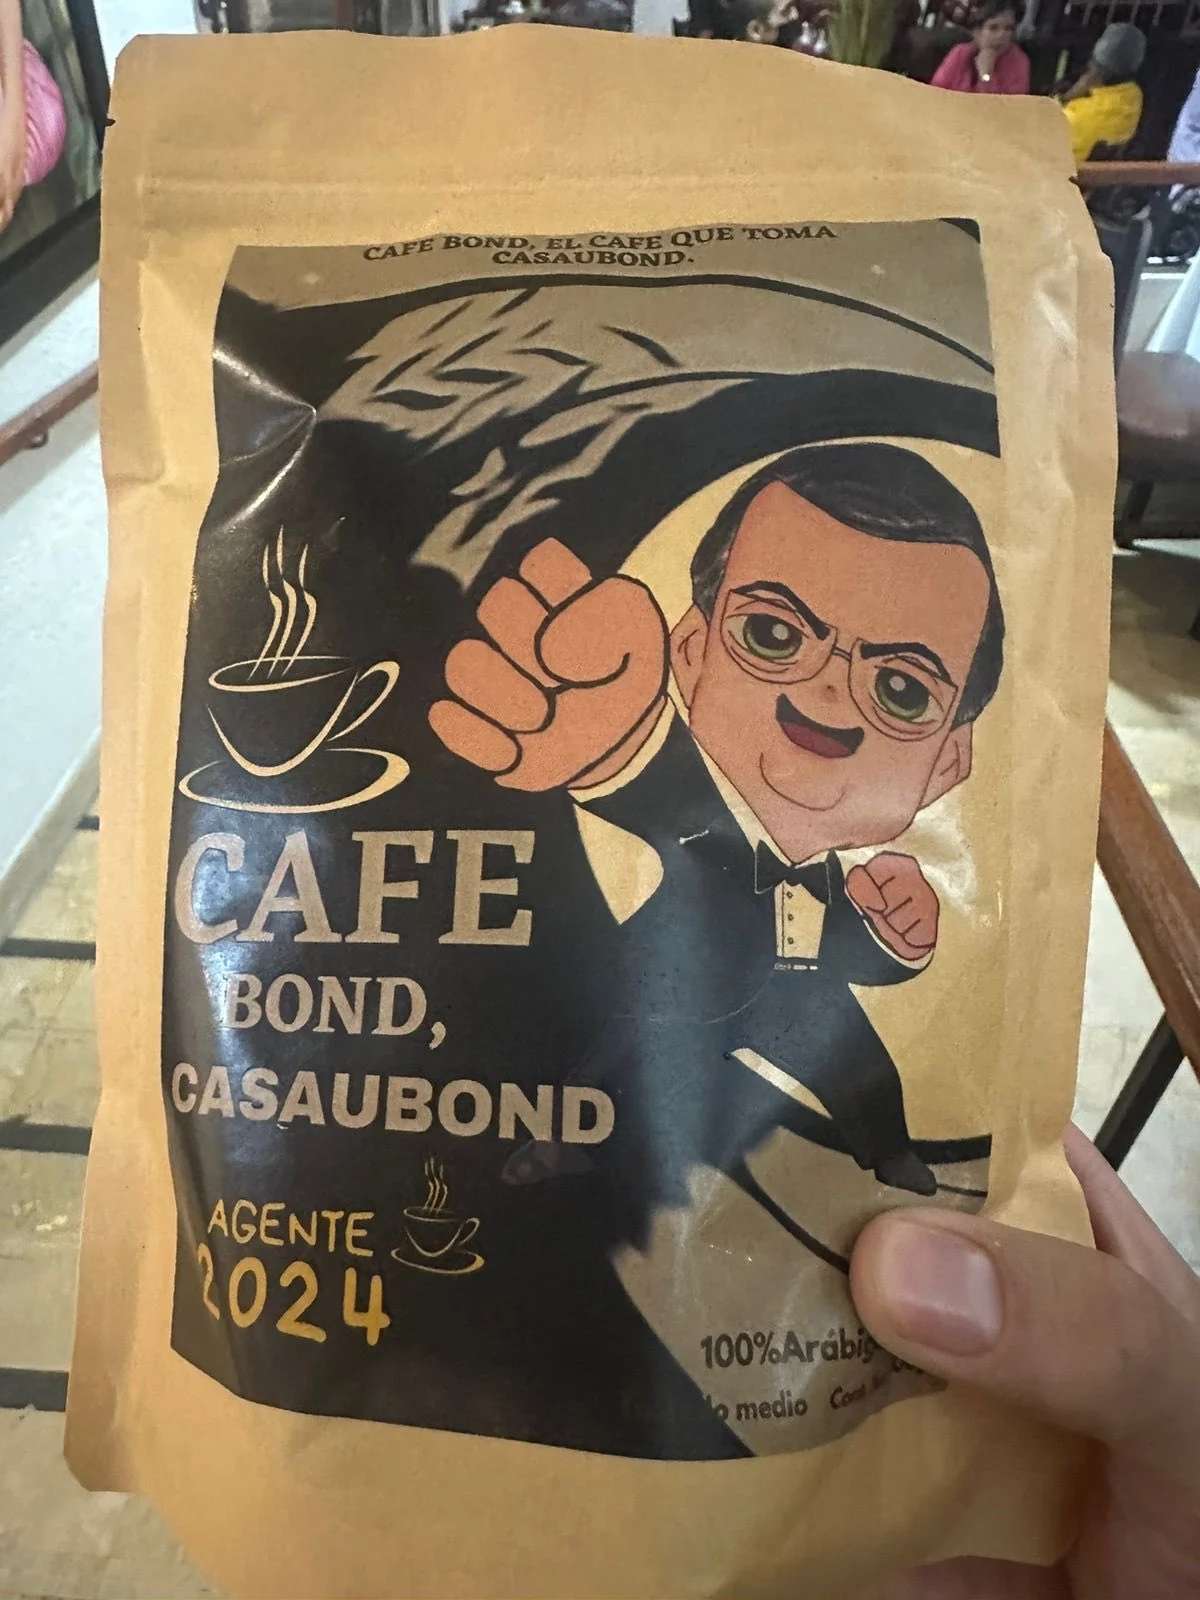 ¿Bond? No, Marcelo Casaubond